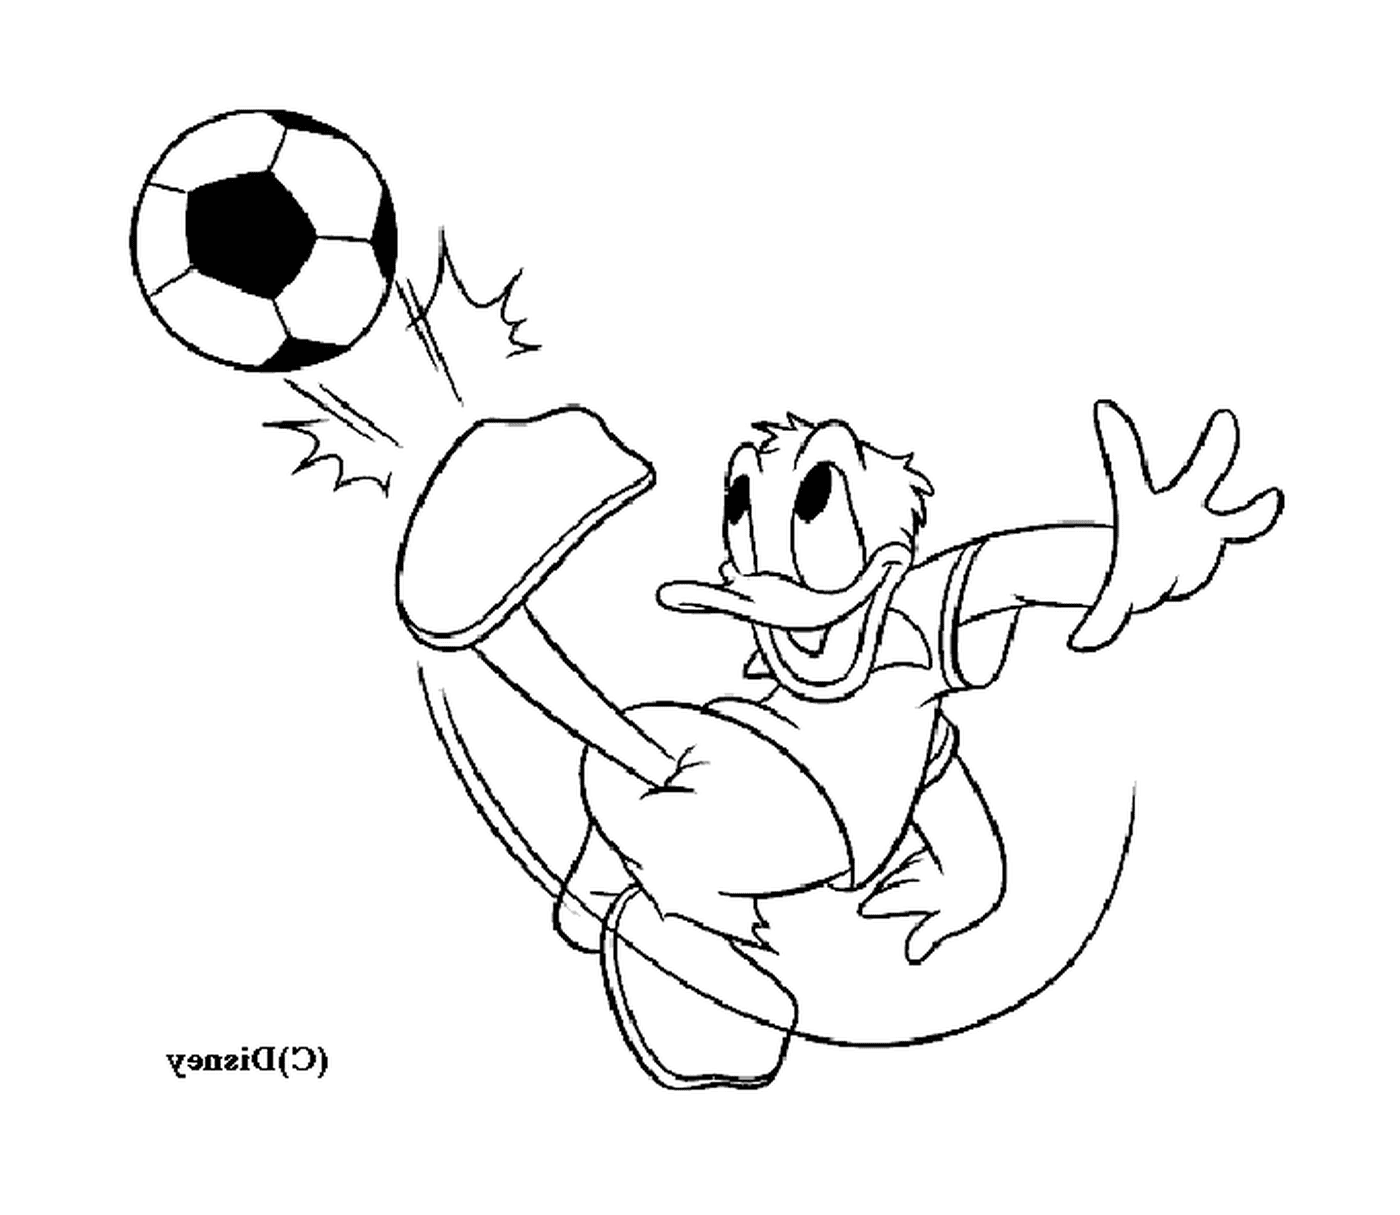  Donald gioca a calcio con entusiasmo 